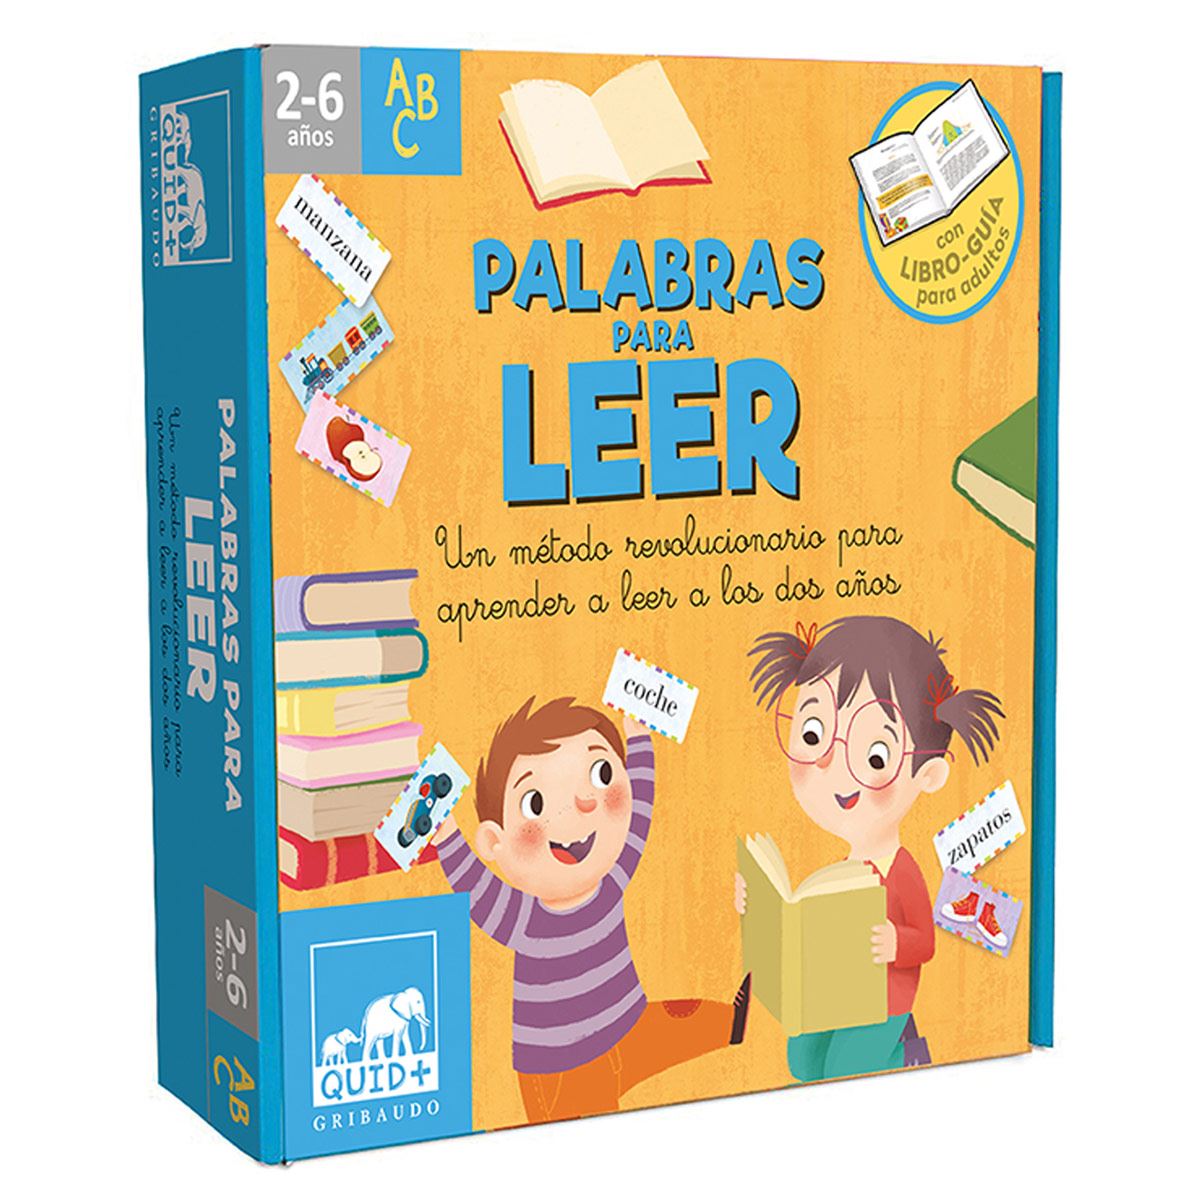 Libros para niños y niñas de 5 y 6 años - Aprender a leer: El blog de Alexa